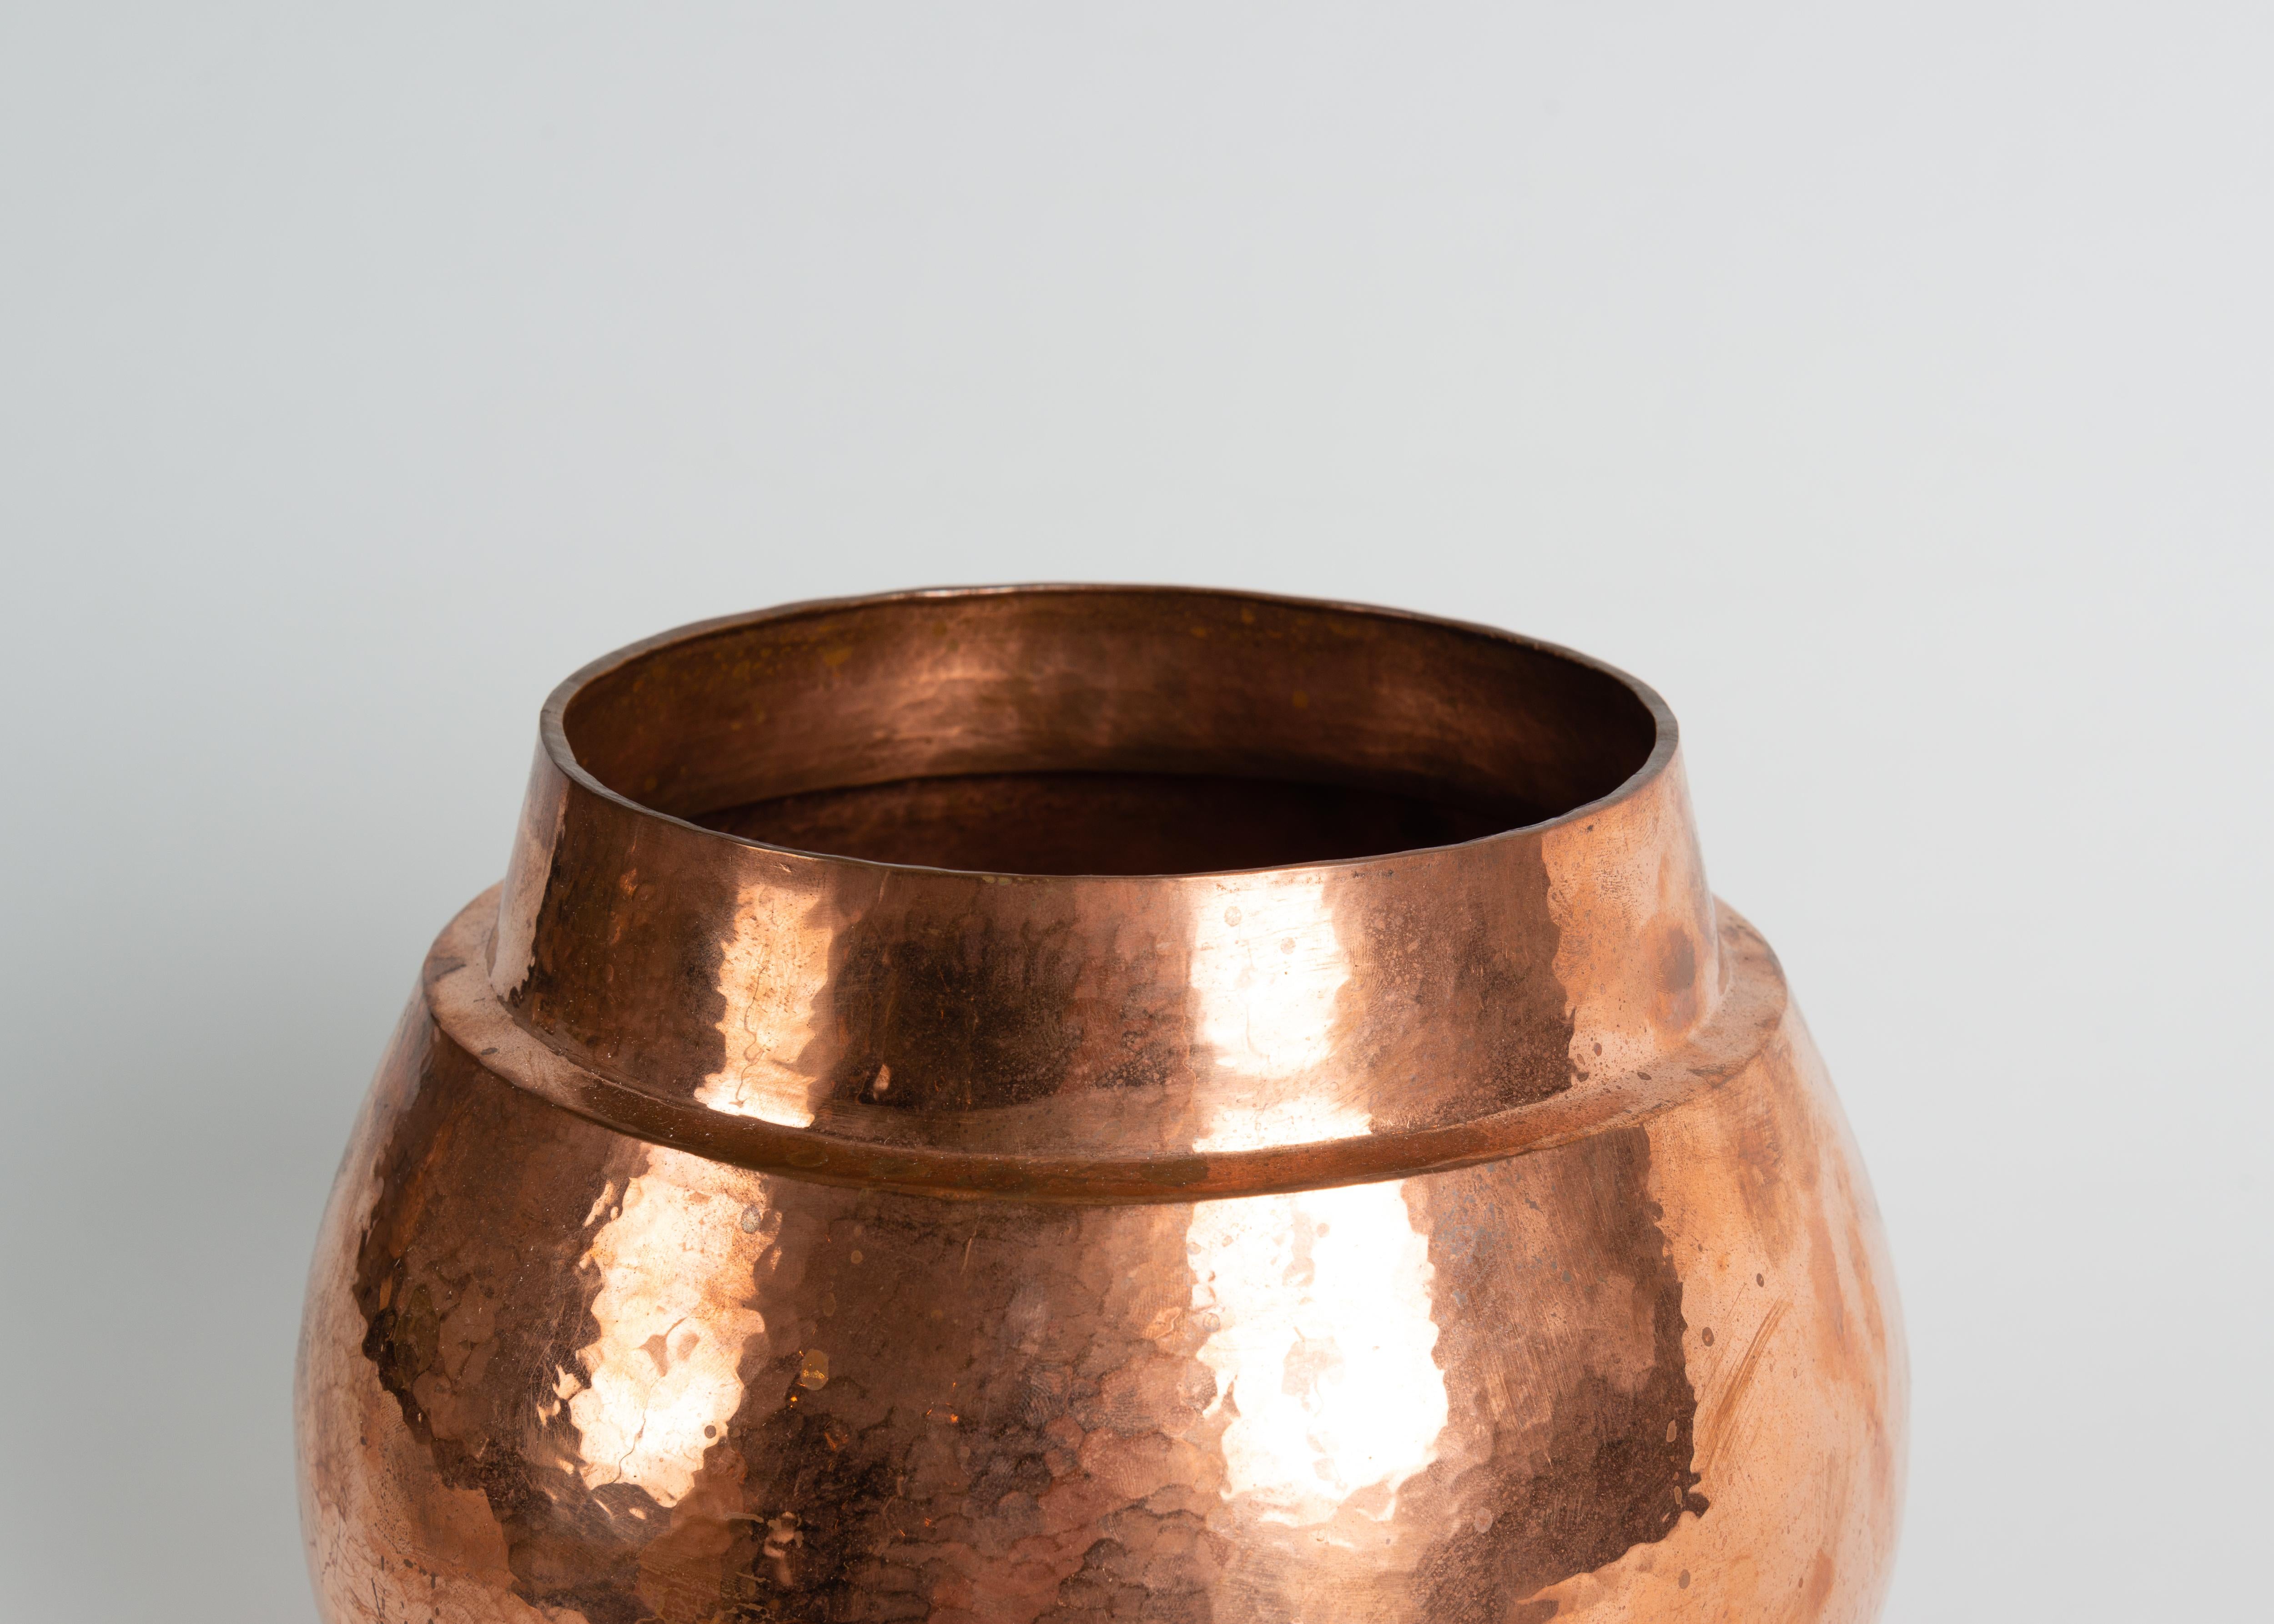 Diese Vase gehört zu einer Serie wunderschöner, gelappter Vasen, die die amerikanische Designerin Laura Kirar in Zusammenarbeit mit Kunsthandwerkern der fünften Generation in Michoacan, Mexiko, entworfen hat. Um diese bemerkenswerten Stücke